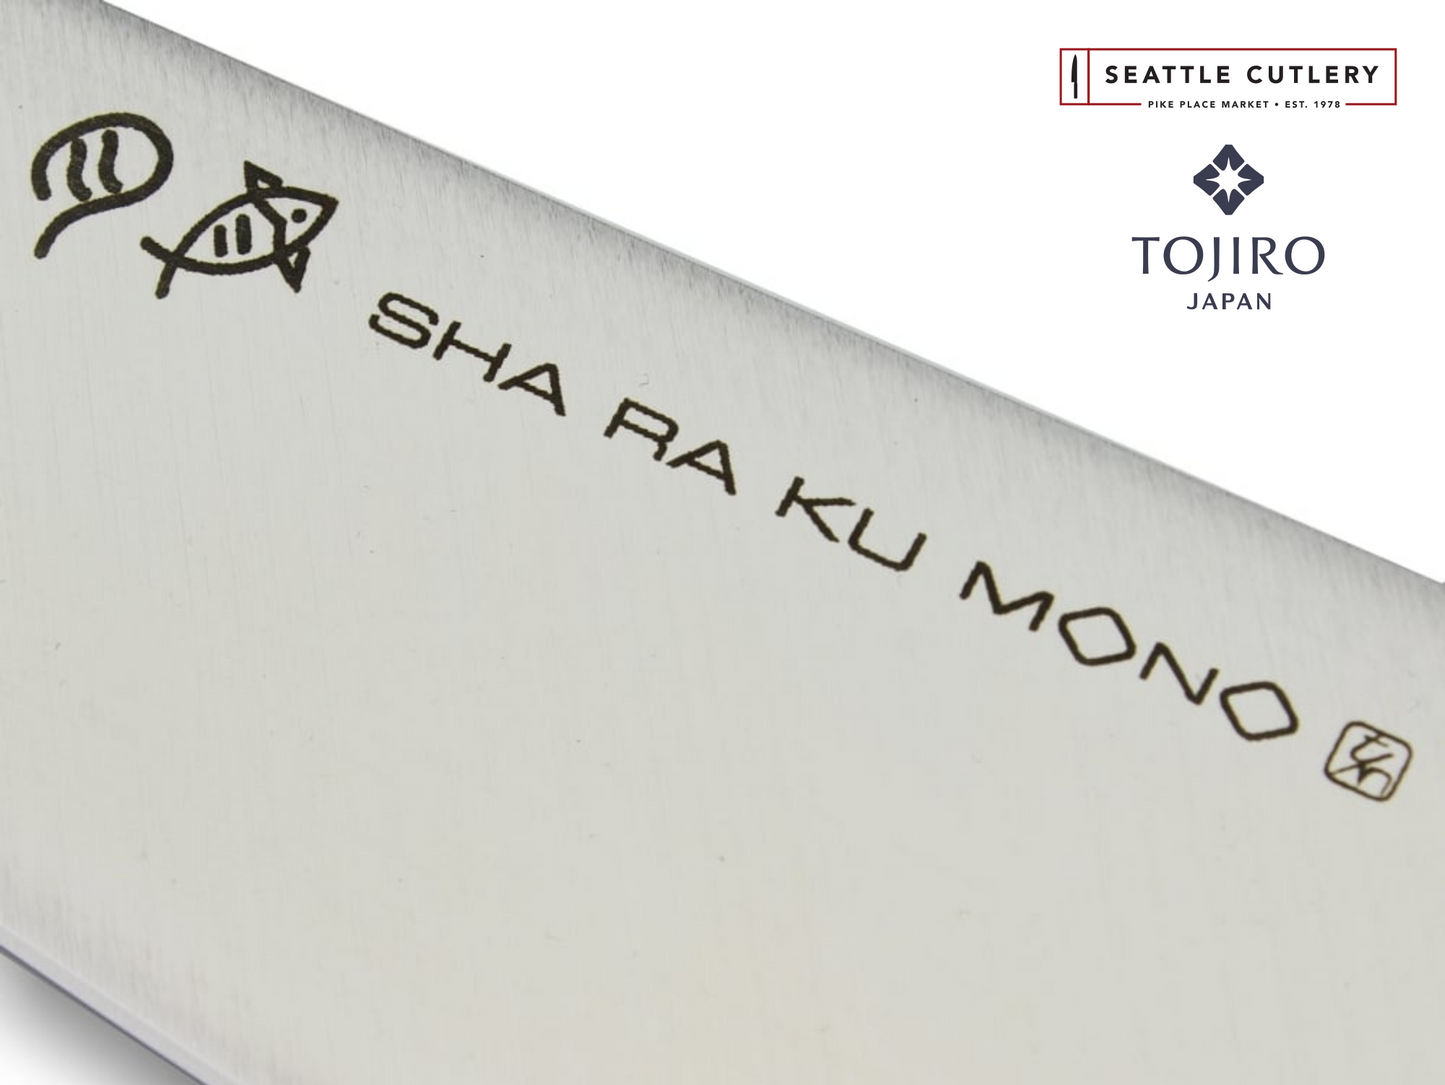 Sha Ra Ku Mono Utility Knife, 140 mm (5.5")